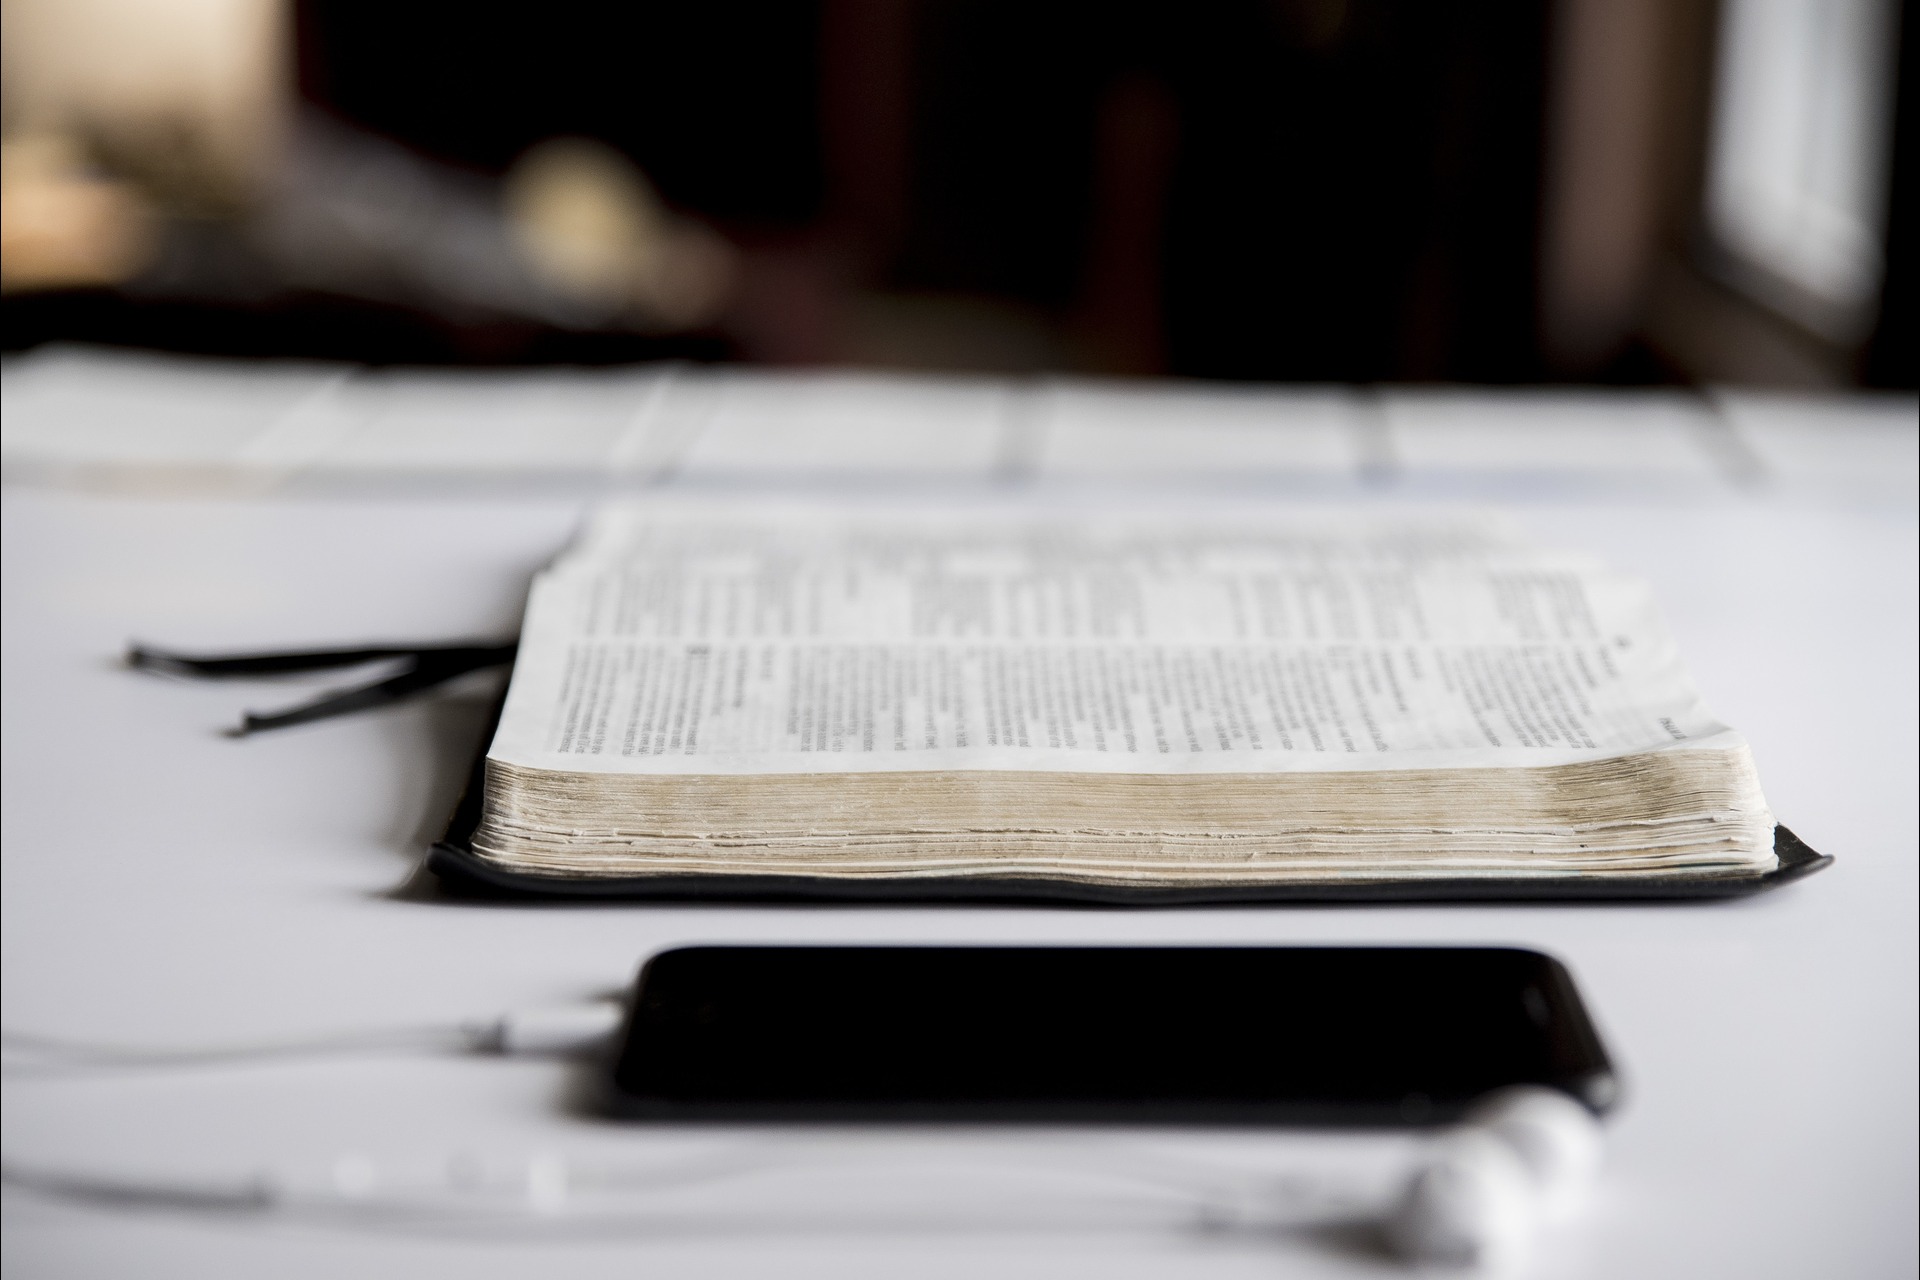 Religione: una bibbia e uno smartphone l'una accanto all'altro: una contraddizione del giorno d'oggi?